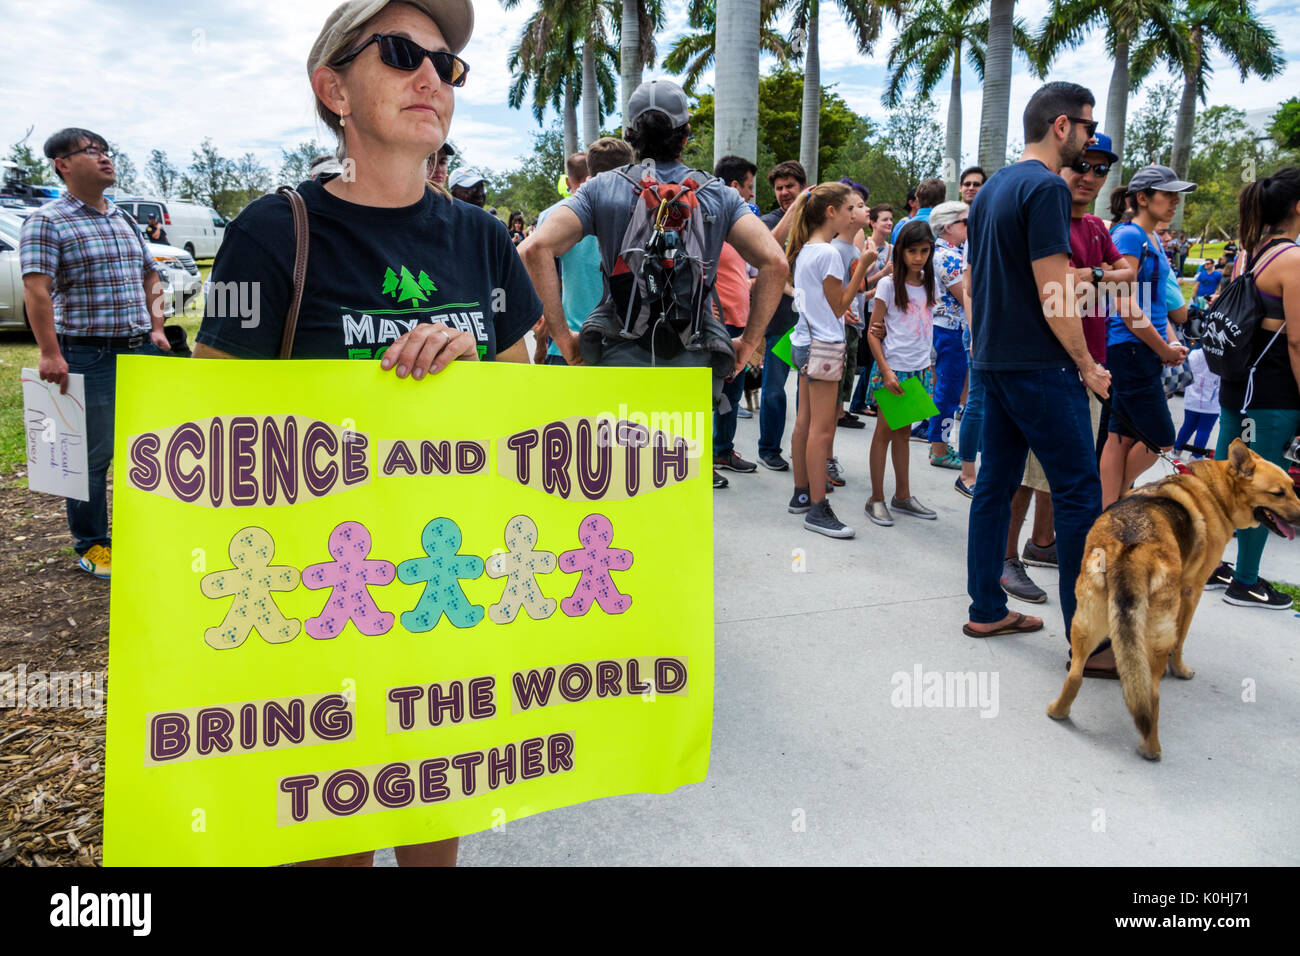 Miami Florida,Museum Park,March for Science,Protest,rallye,panneau,affiche,protester,femme femme femme,enseignant,FL170430116 Banque D'Images